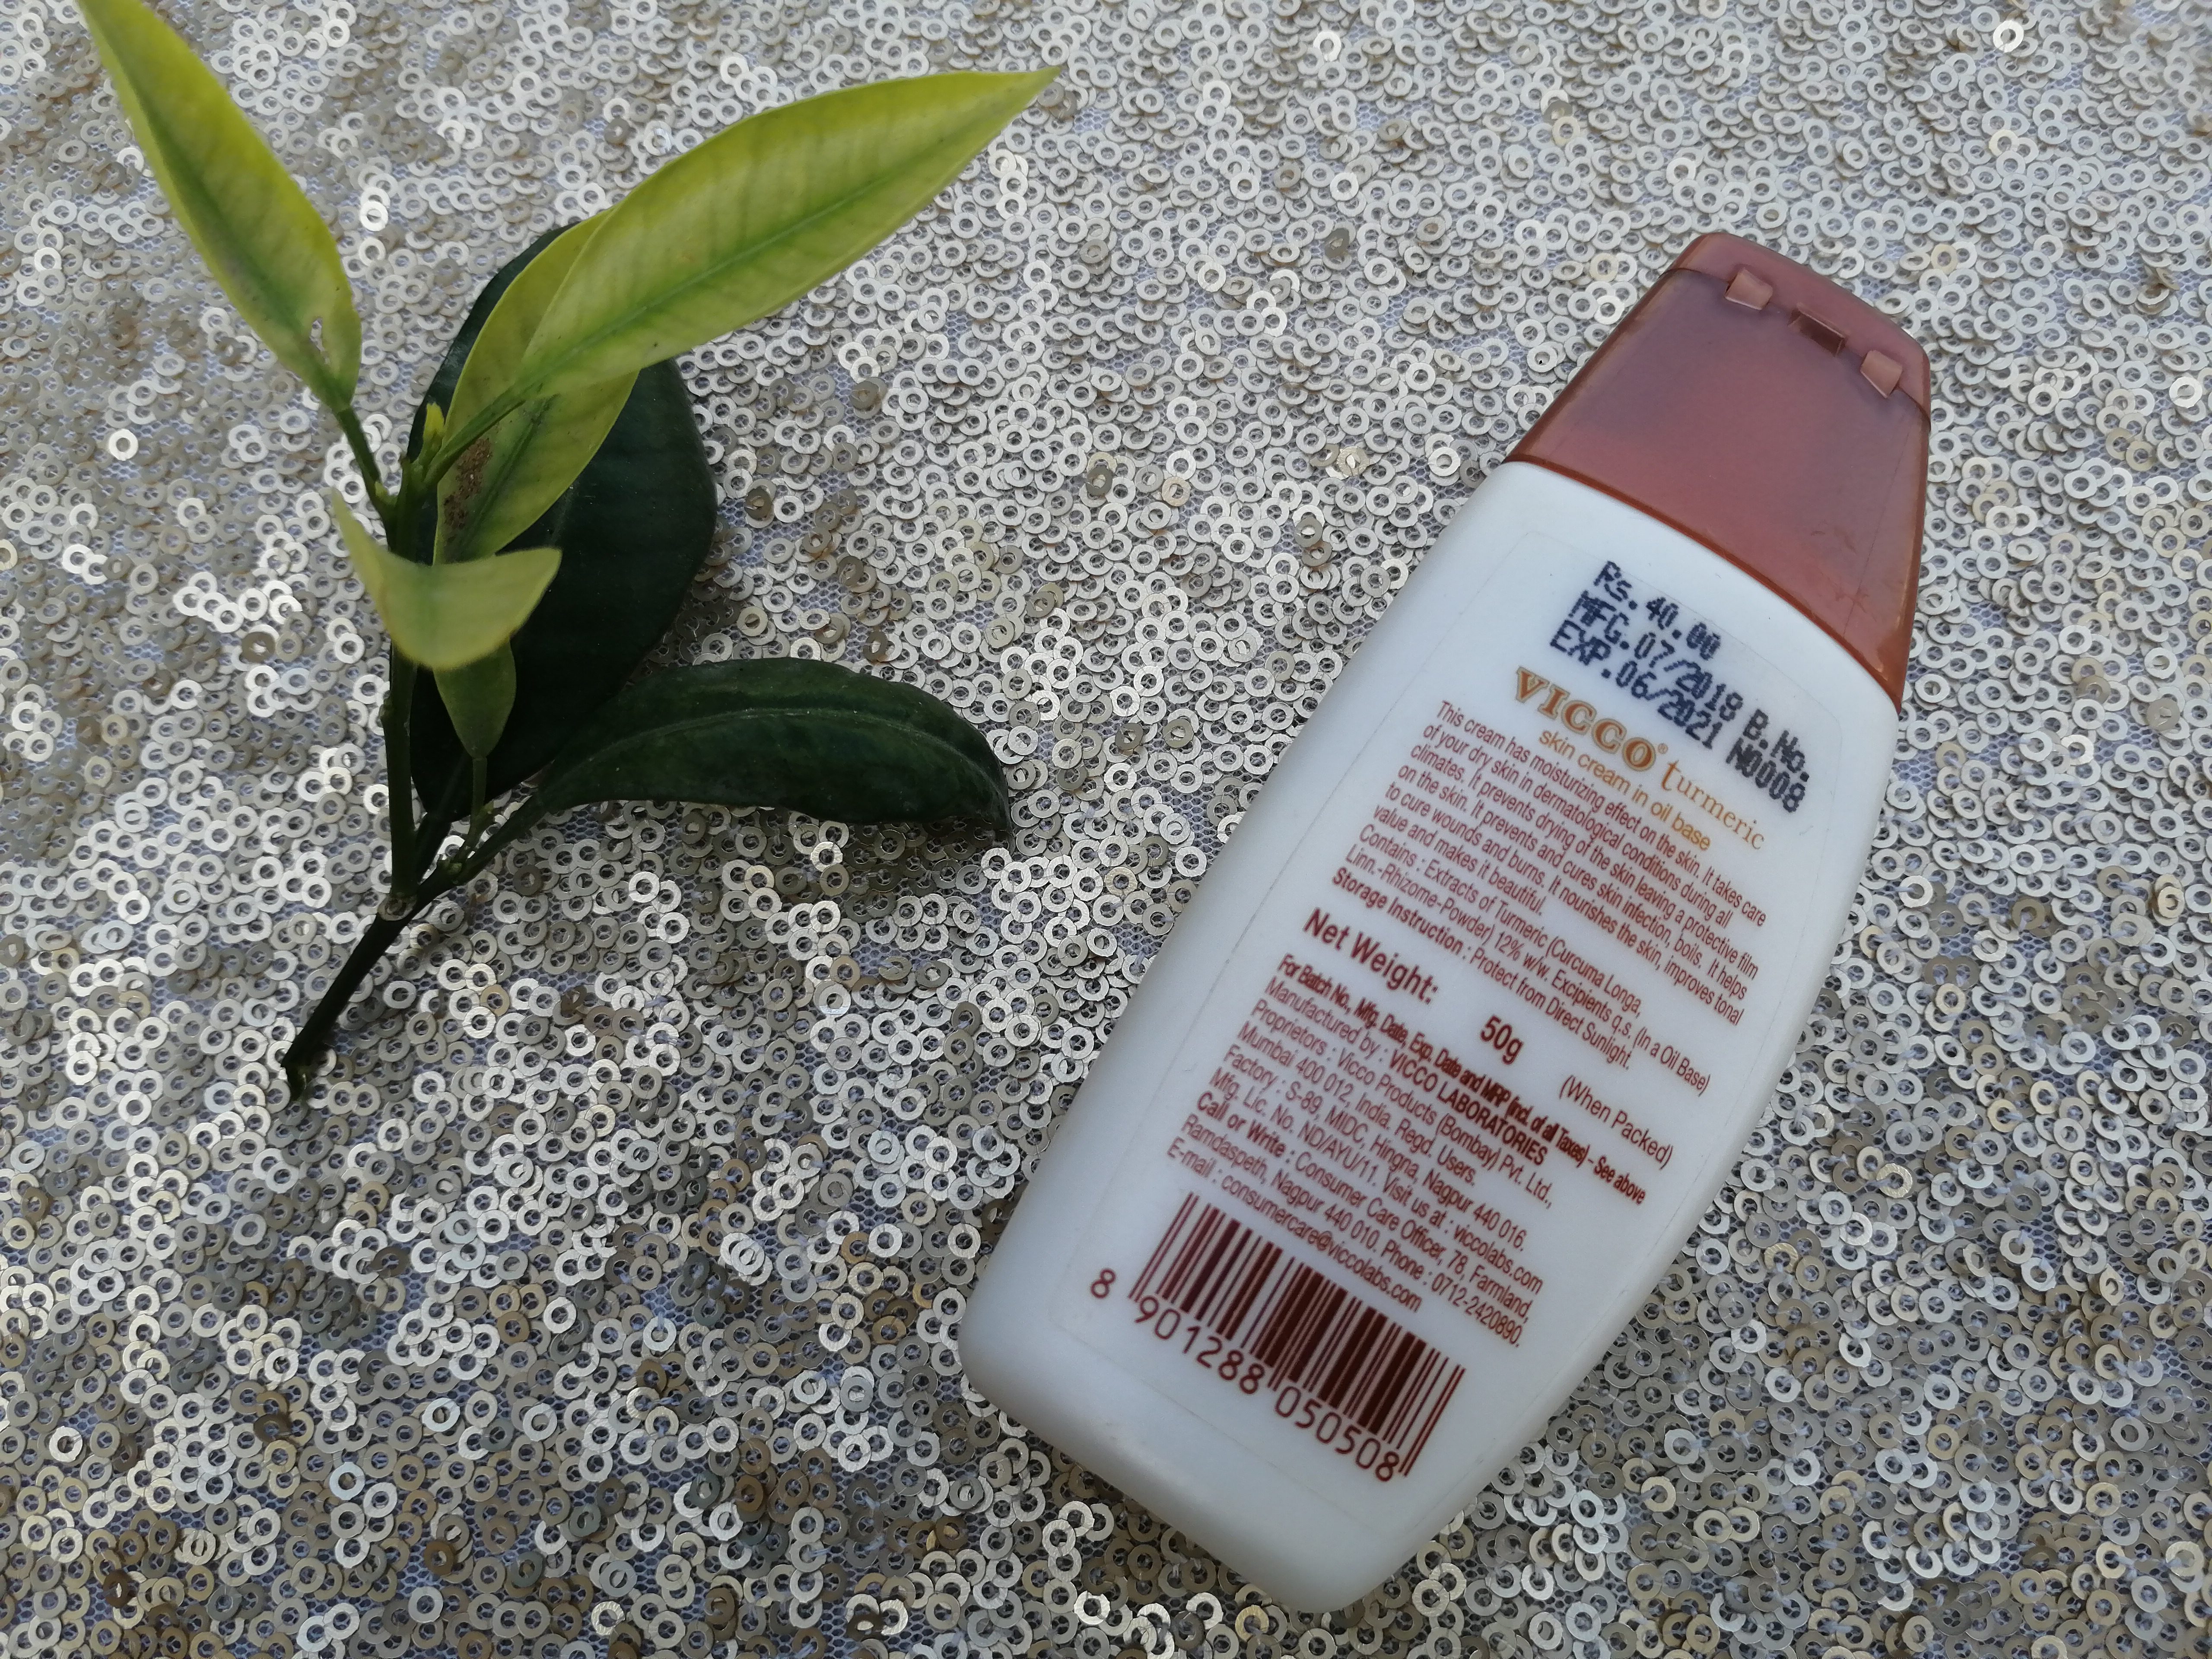 VICCO Turmeric Skin Cream in Oil Base| Review